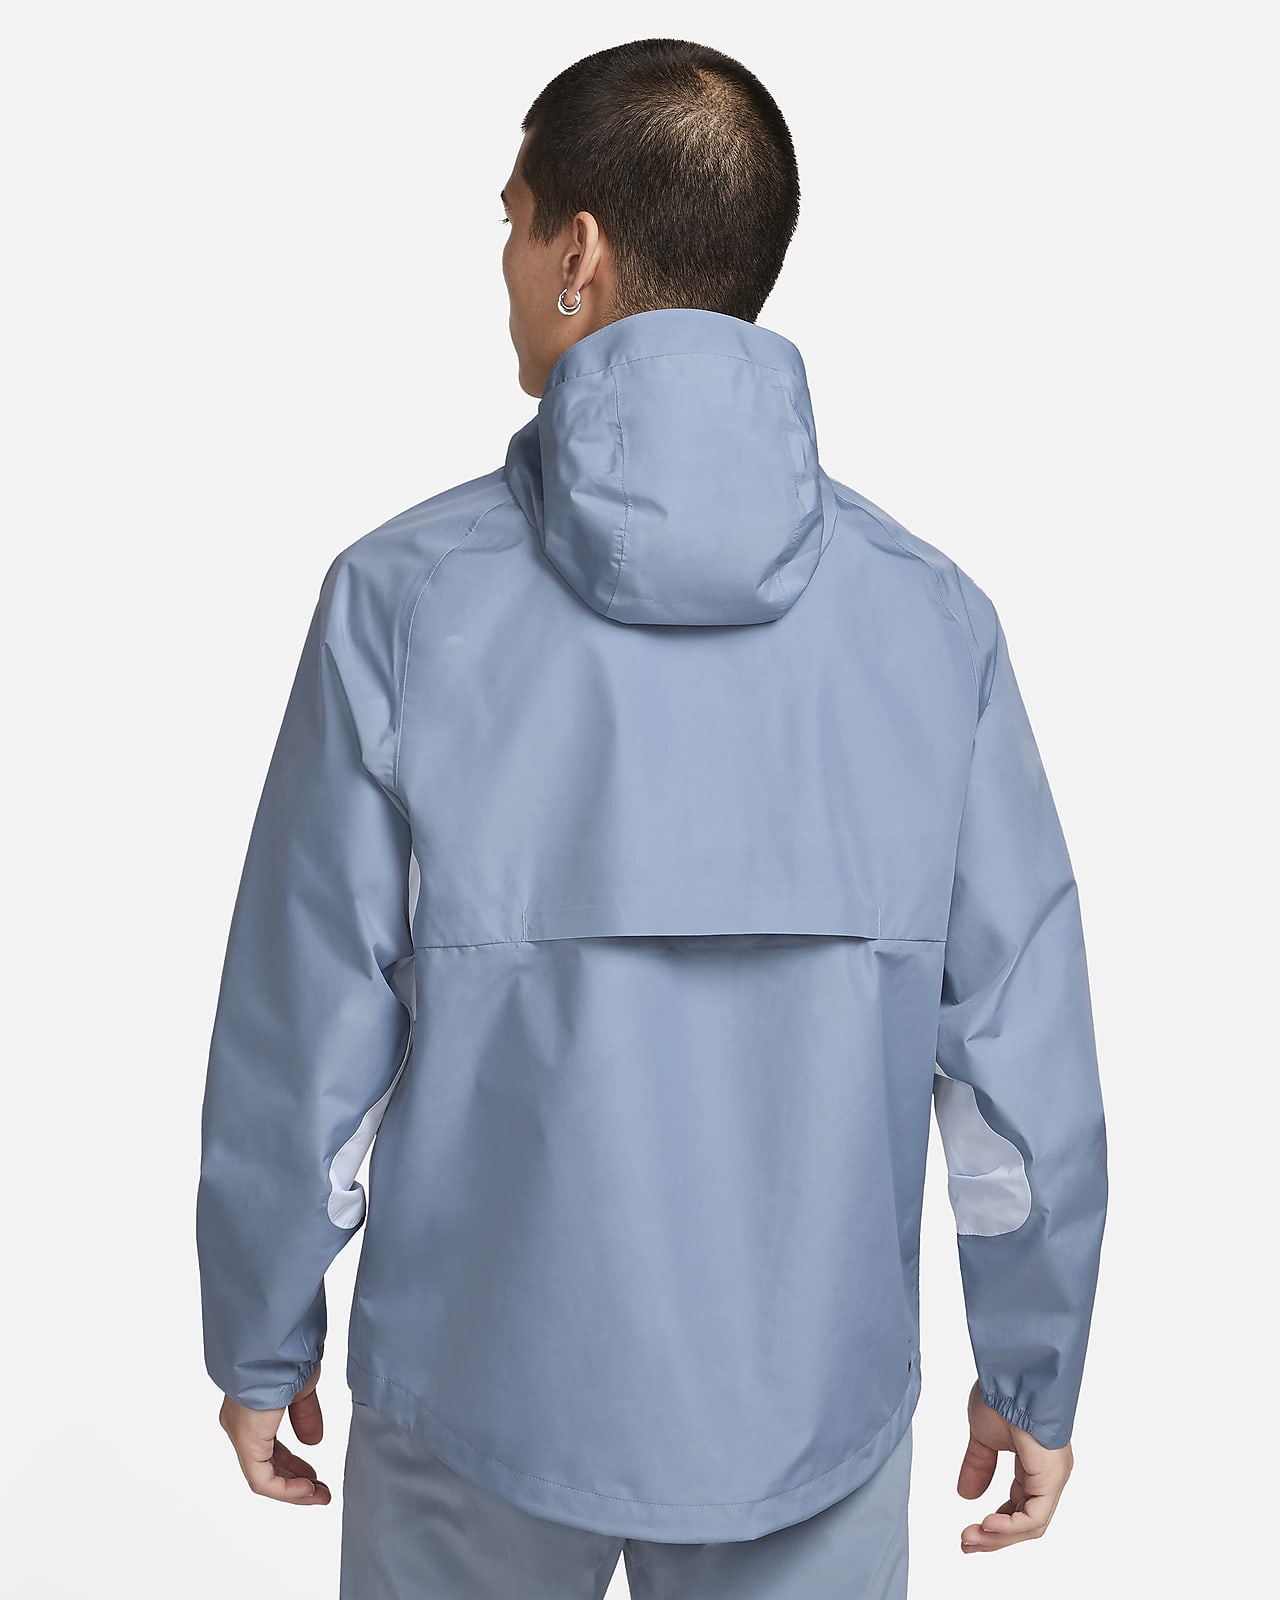 ナイキ GORE-TEX メンズ Mサイズ トレイル ランニングジャケット